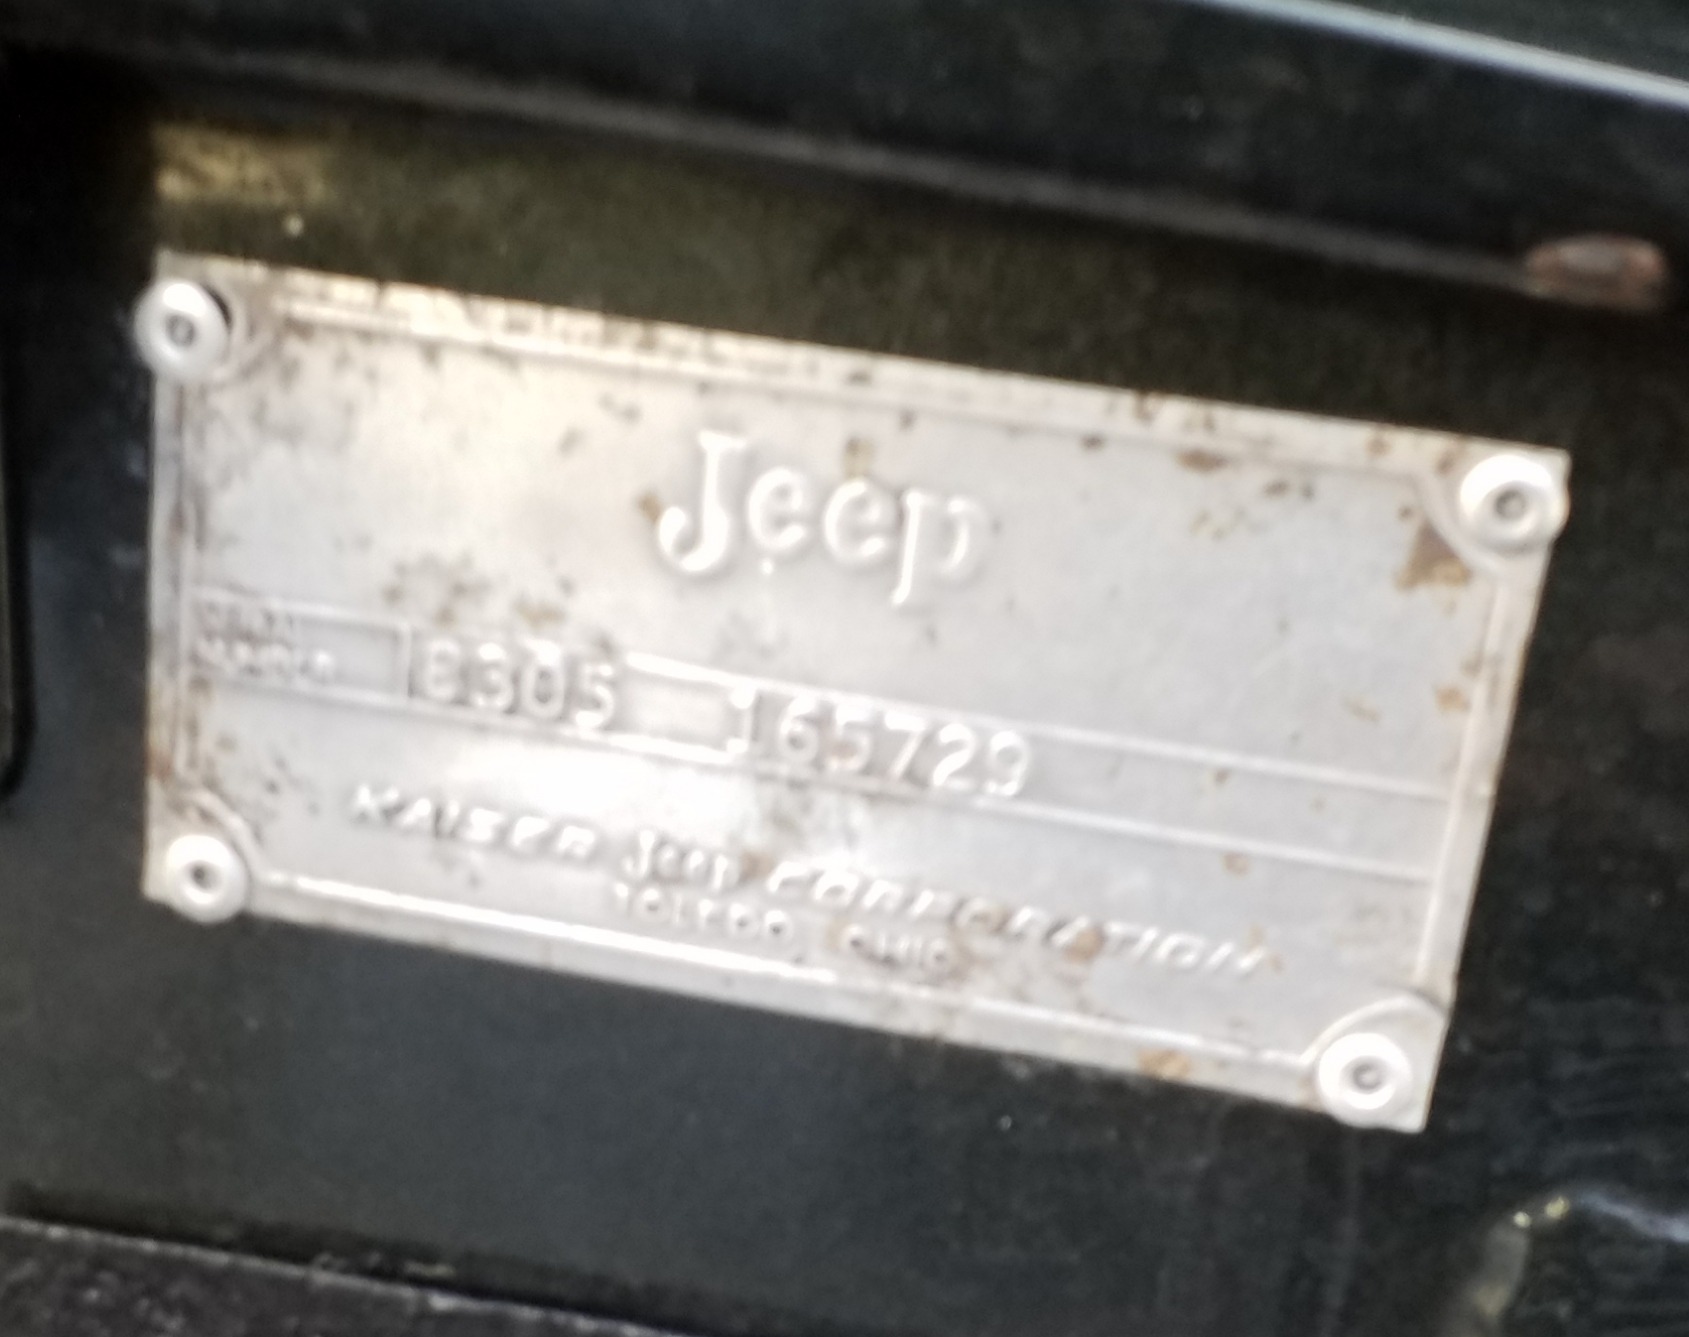 Used-1964-Jeep-CJ-5